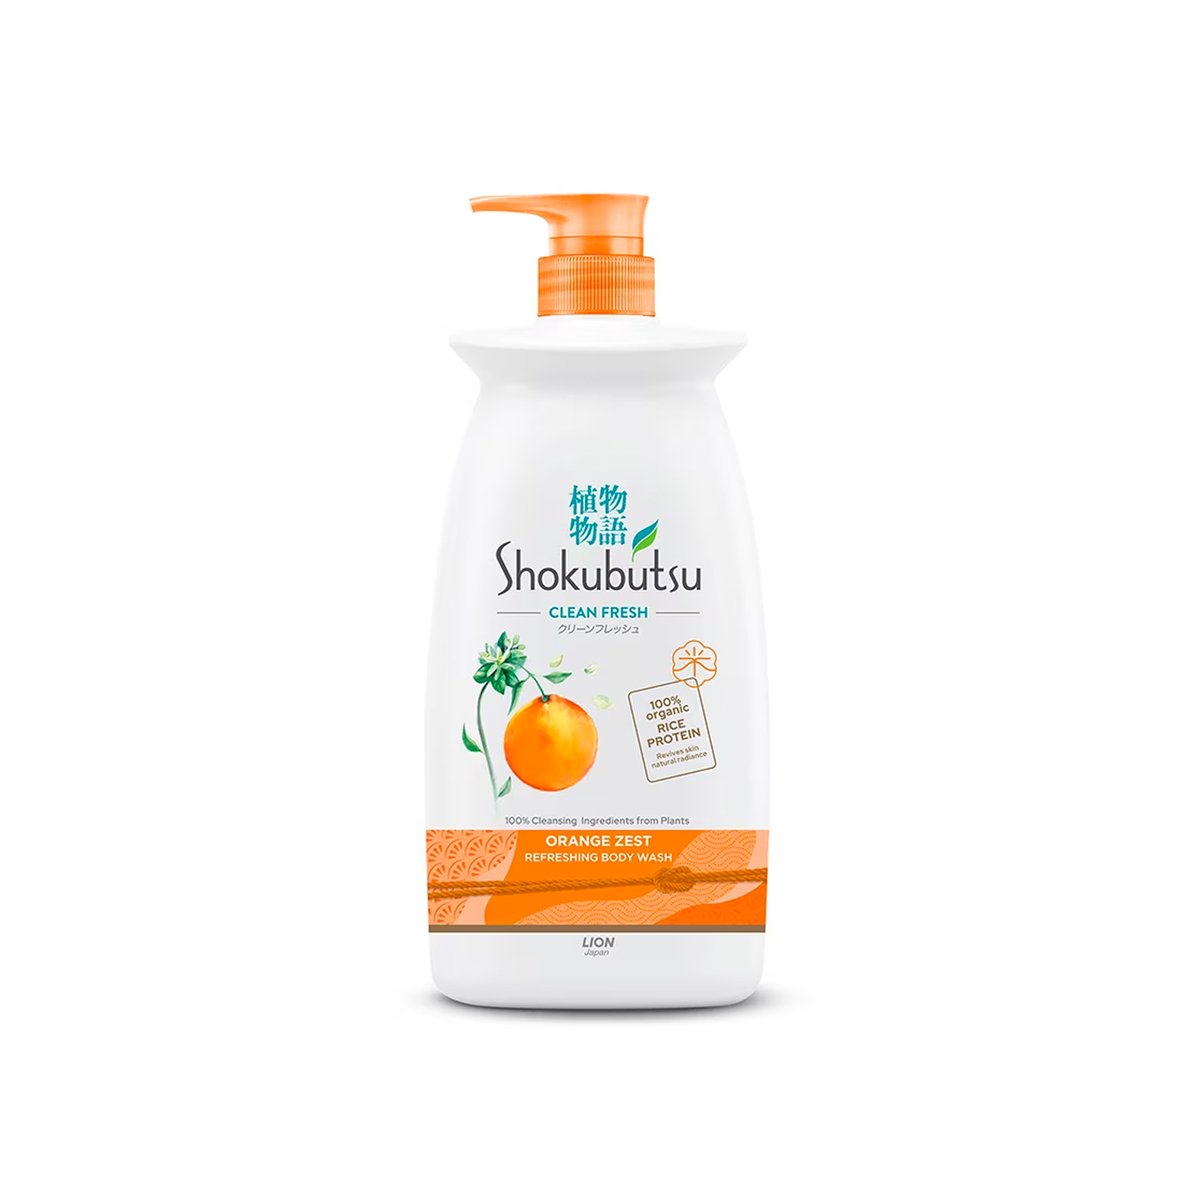 Shokubustu Clean Fresh Body Wash Orange Zest 900g